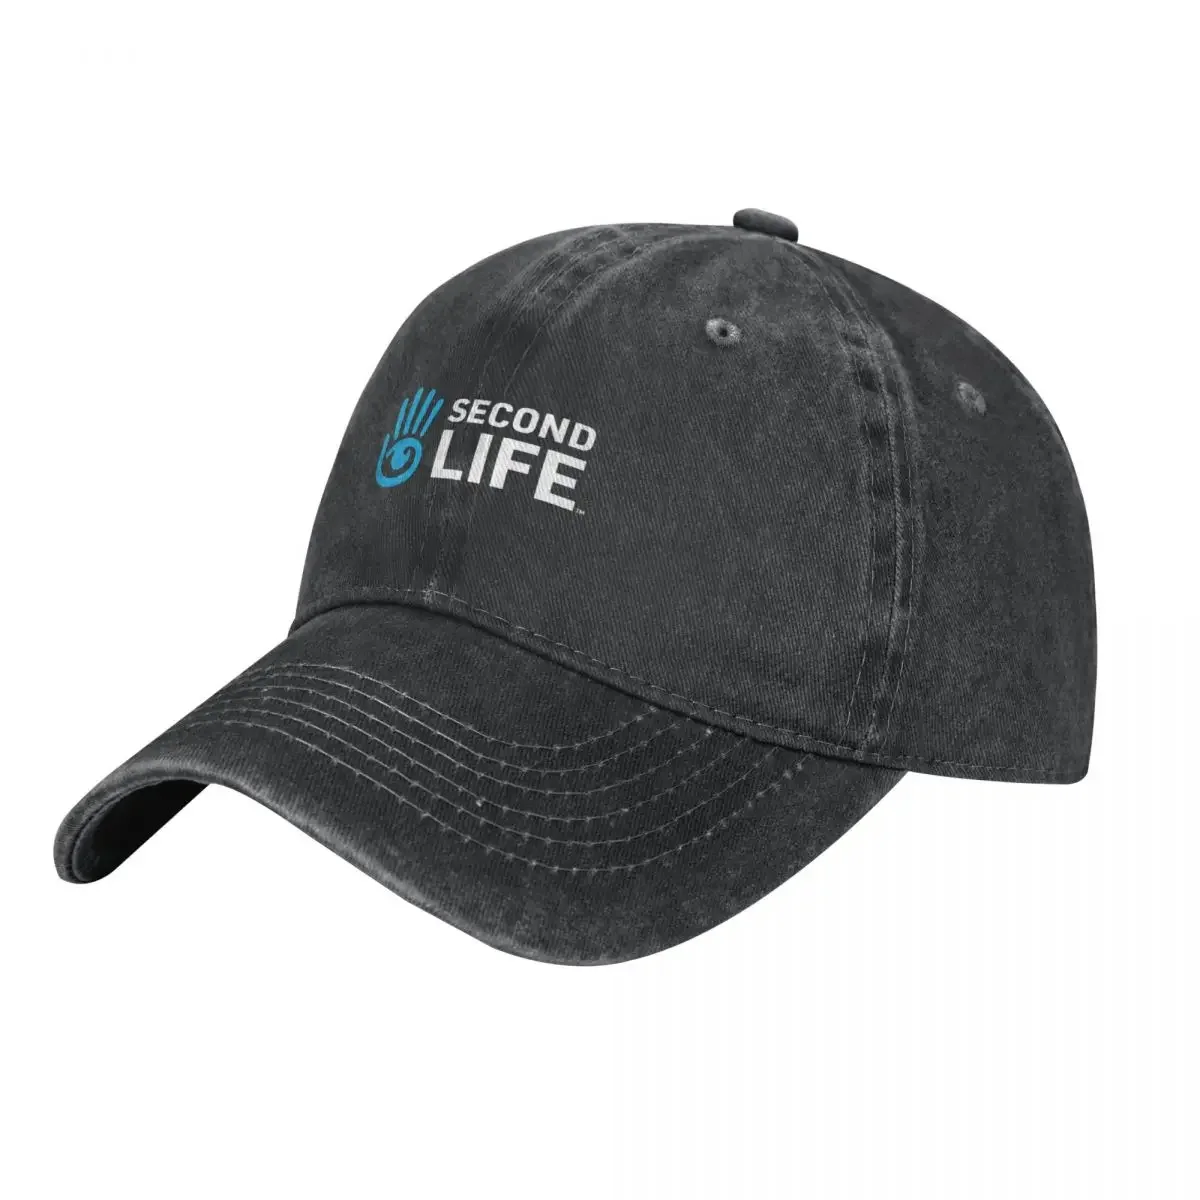 

Second Life Logo Essential Cowboy Hat Golf Wear Sunhat Beach Outing Gentleman Hat Hats Man Women's